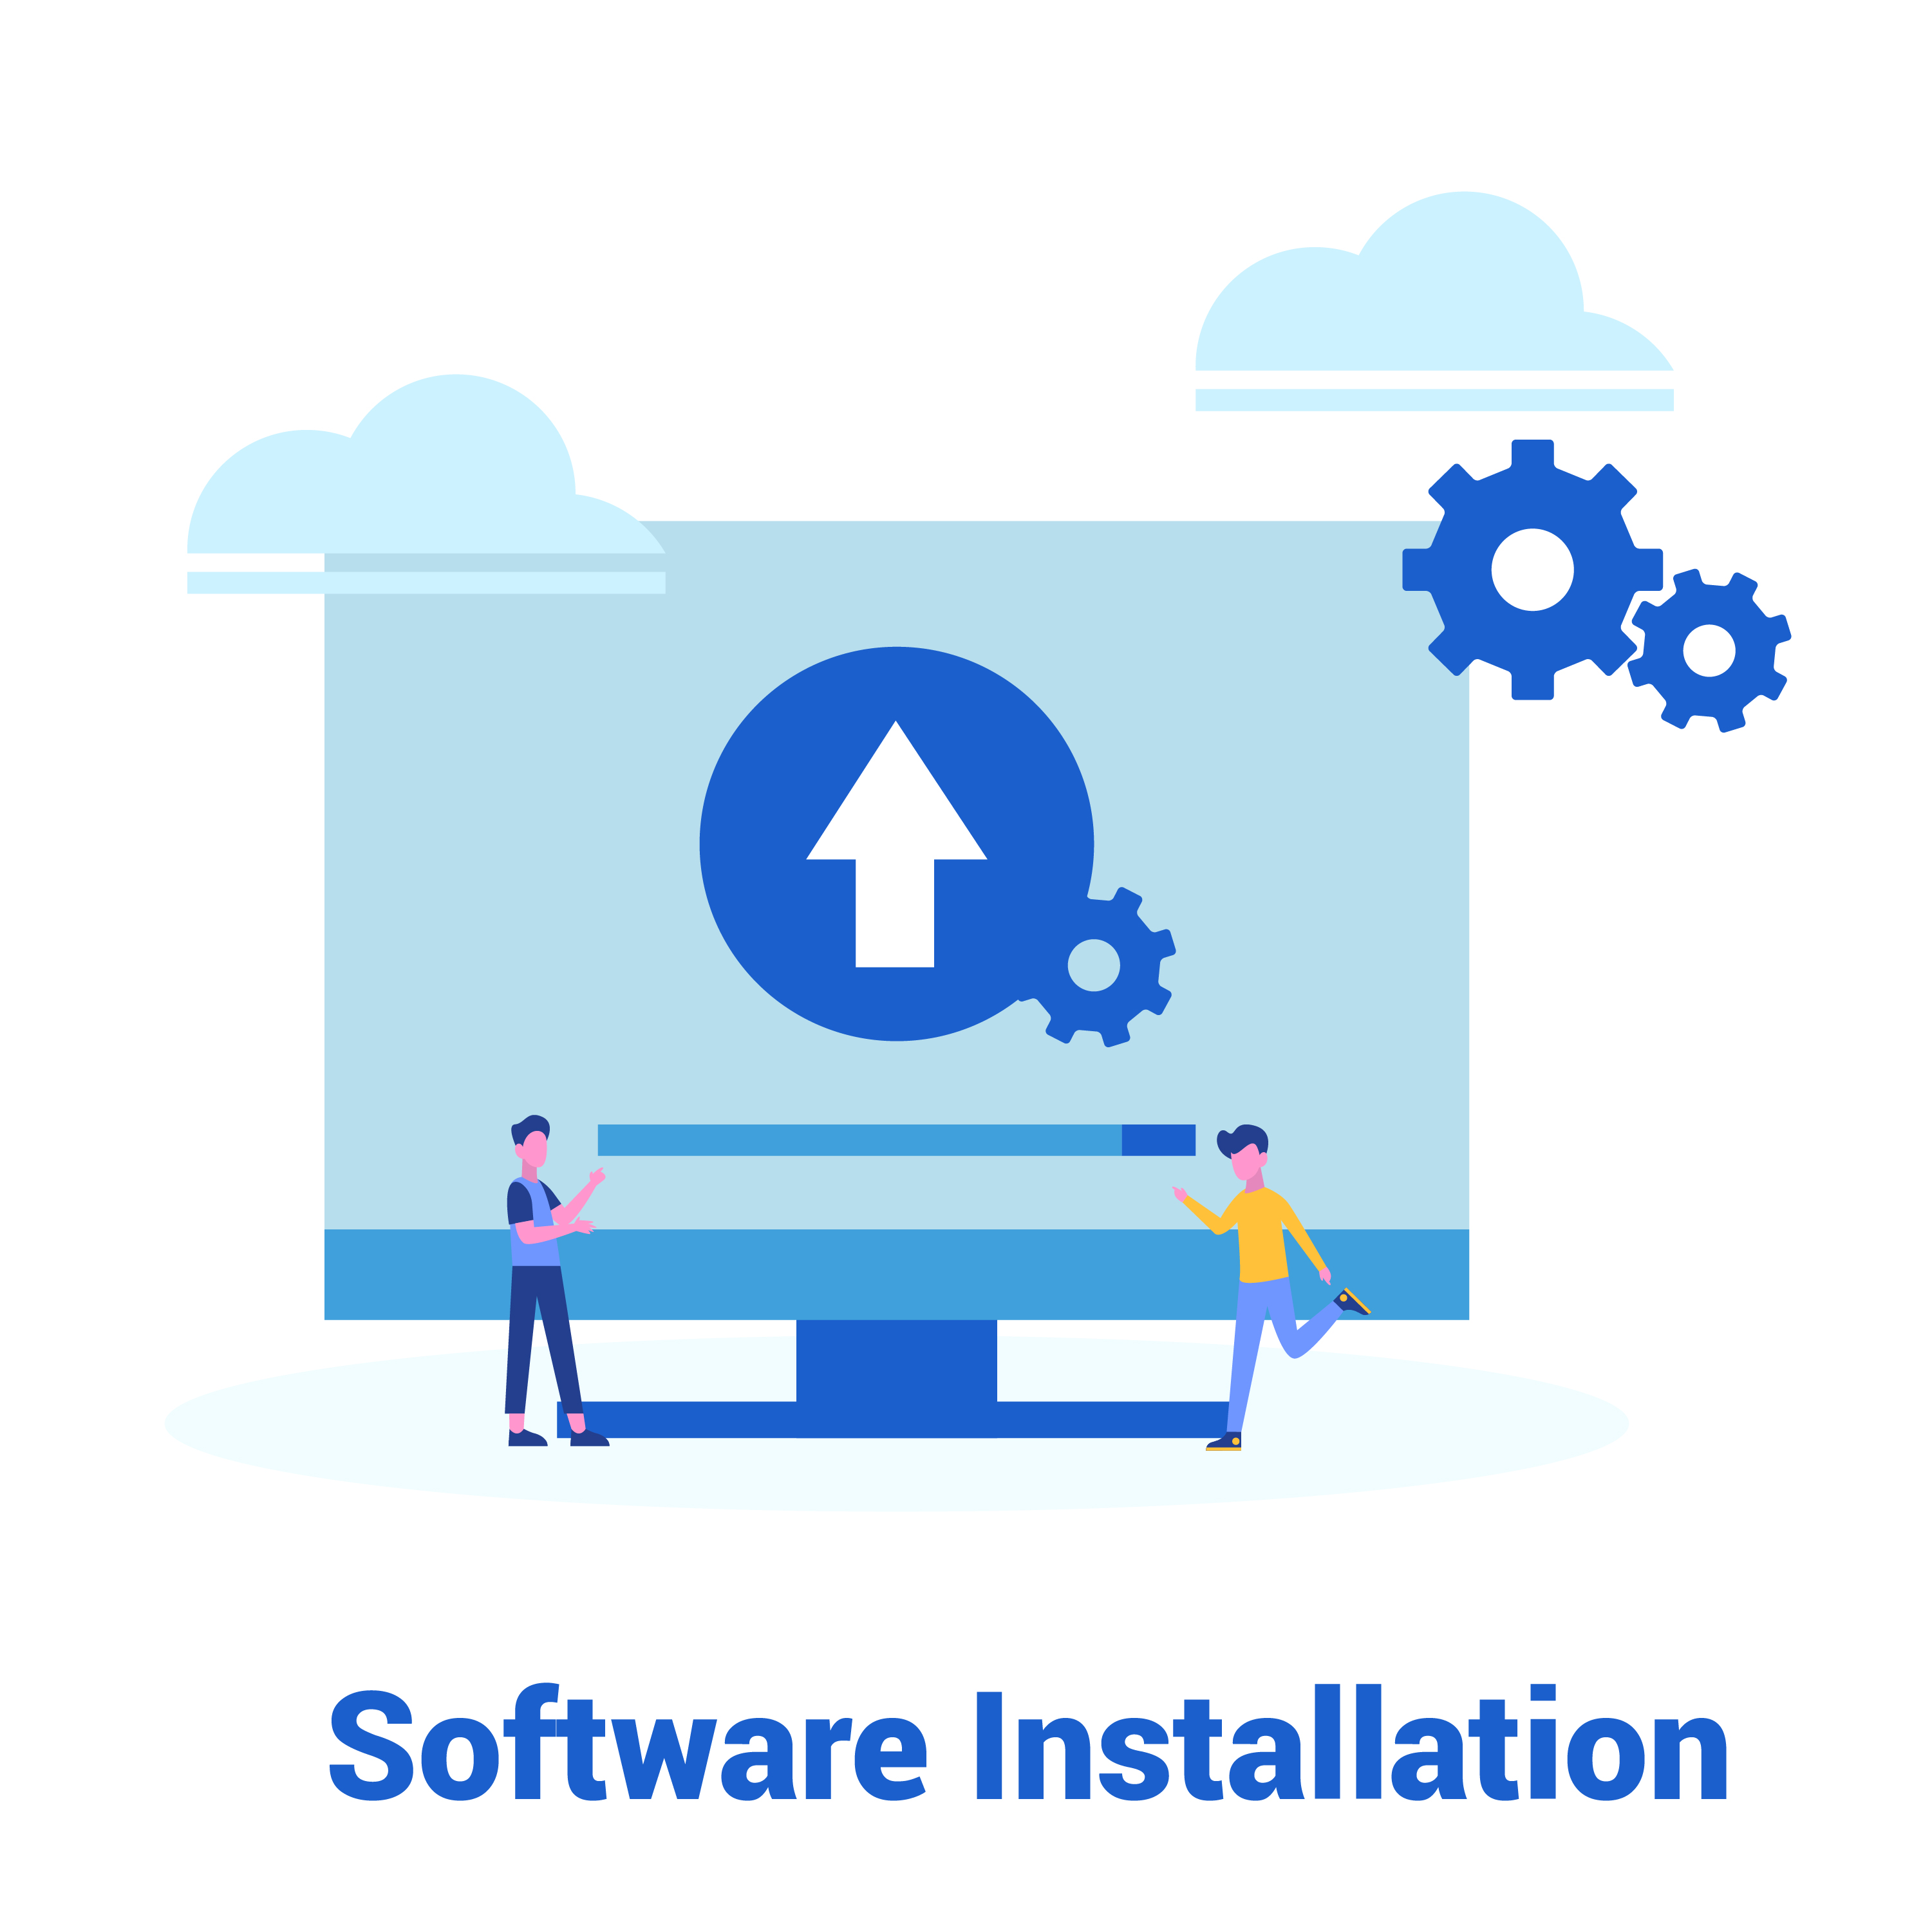 Softwareupgrade - Windows Installation/Upgrade auf die aktuelle Version